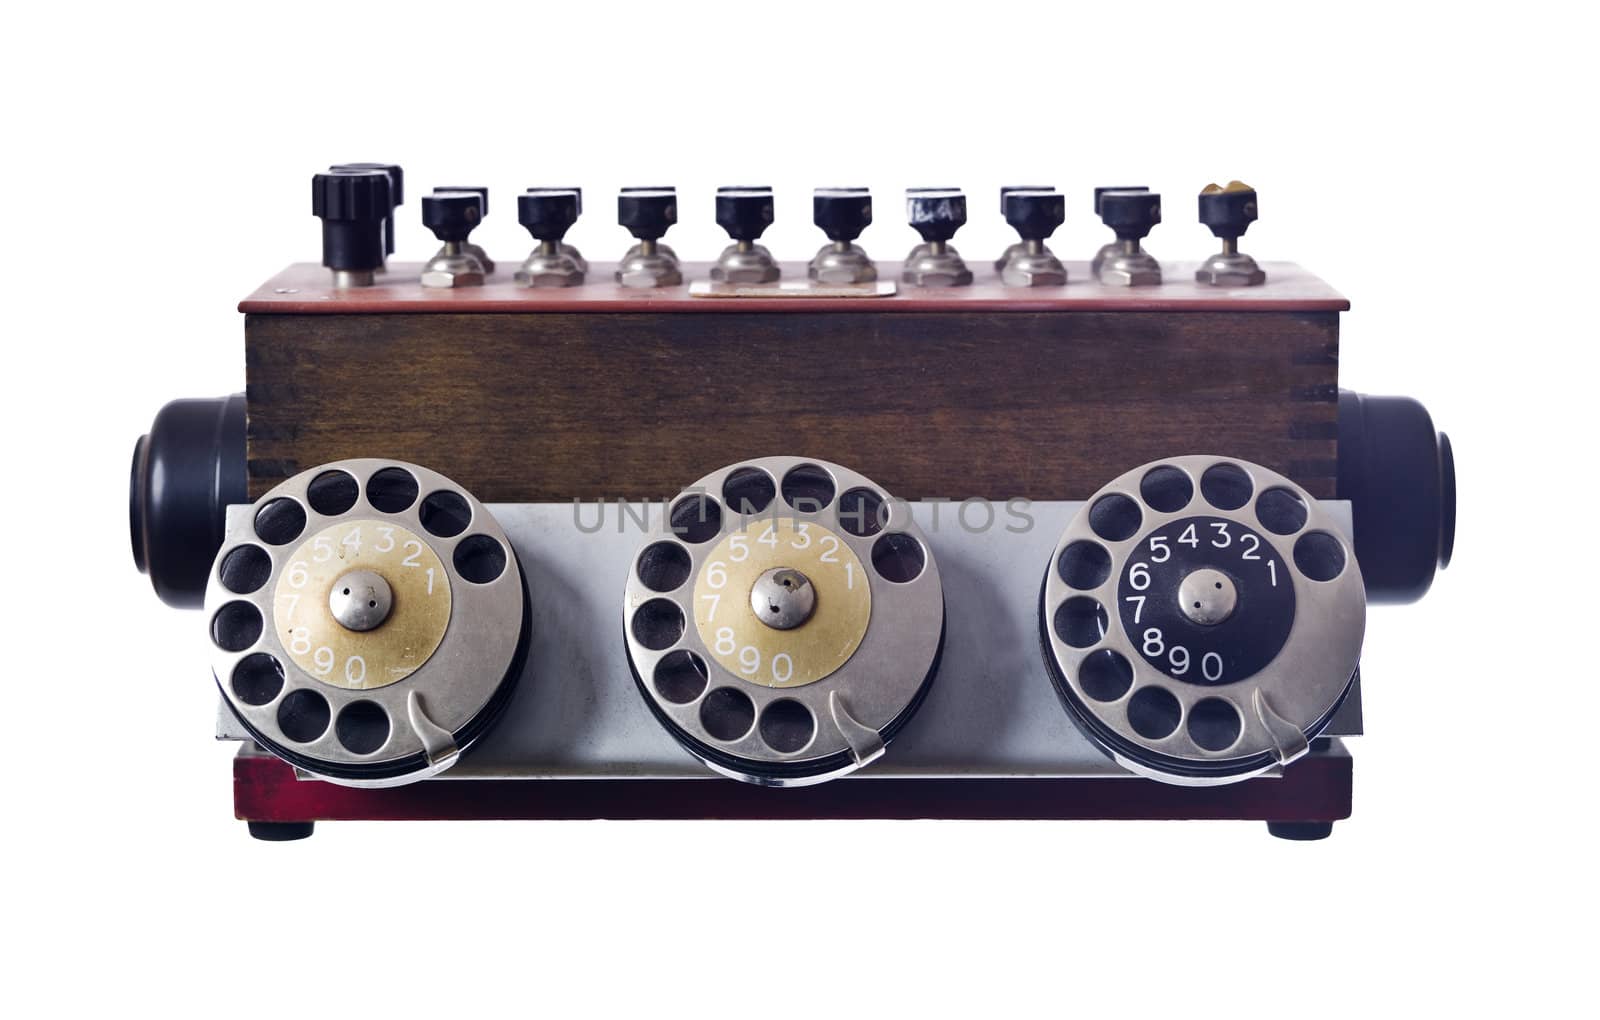 Vintage telephone by gemenacom